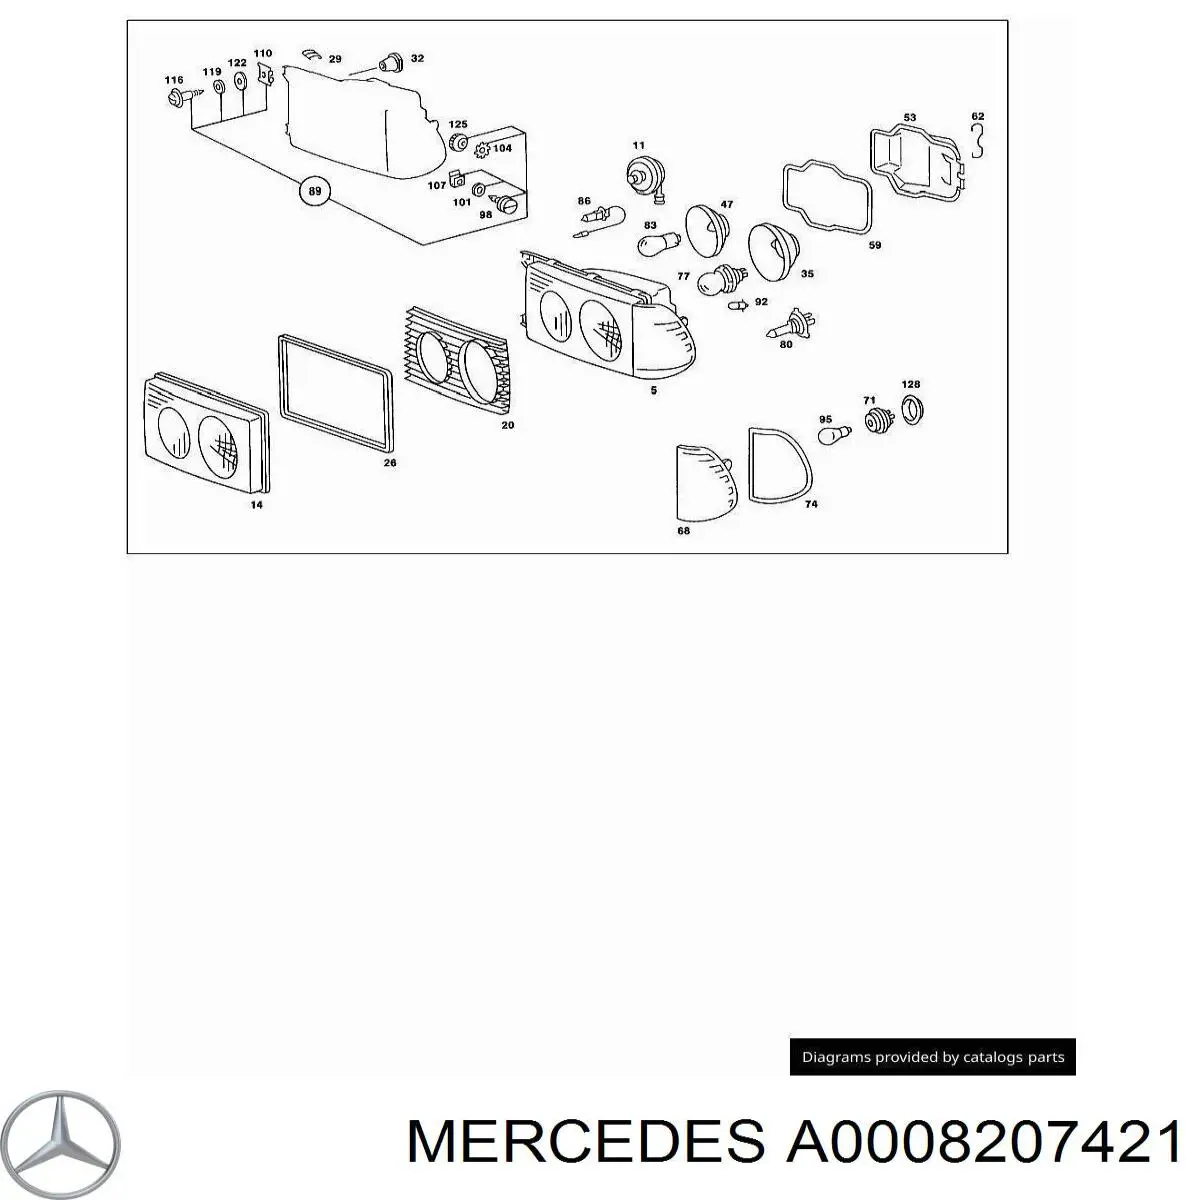 Intermitente derecho Mercedes E C123